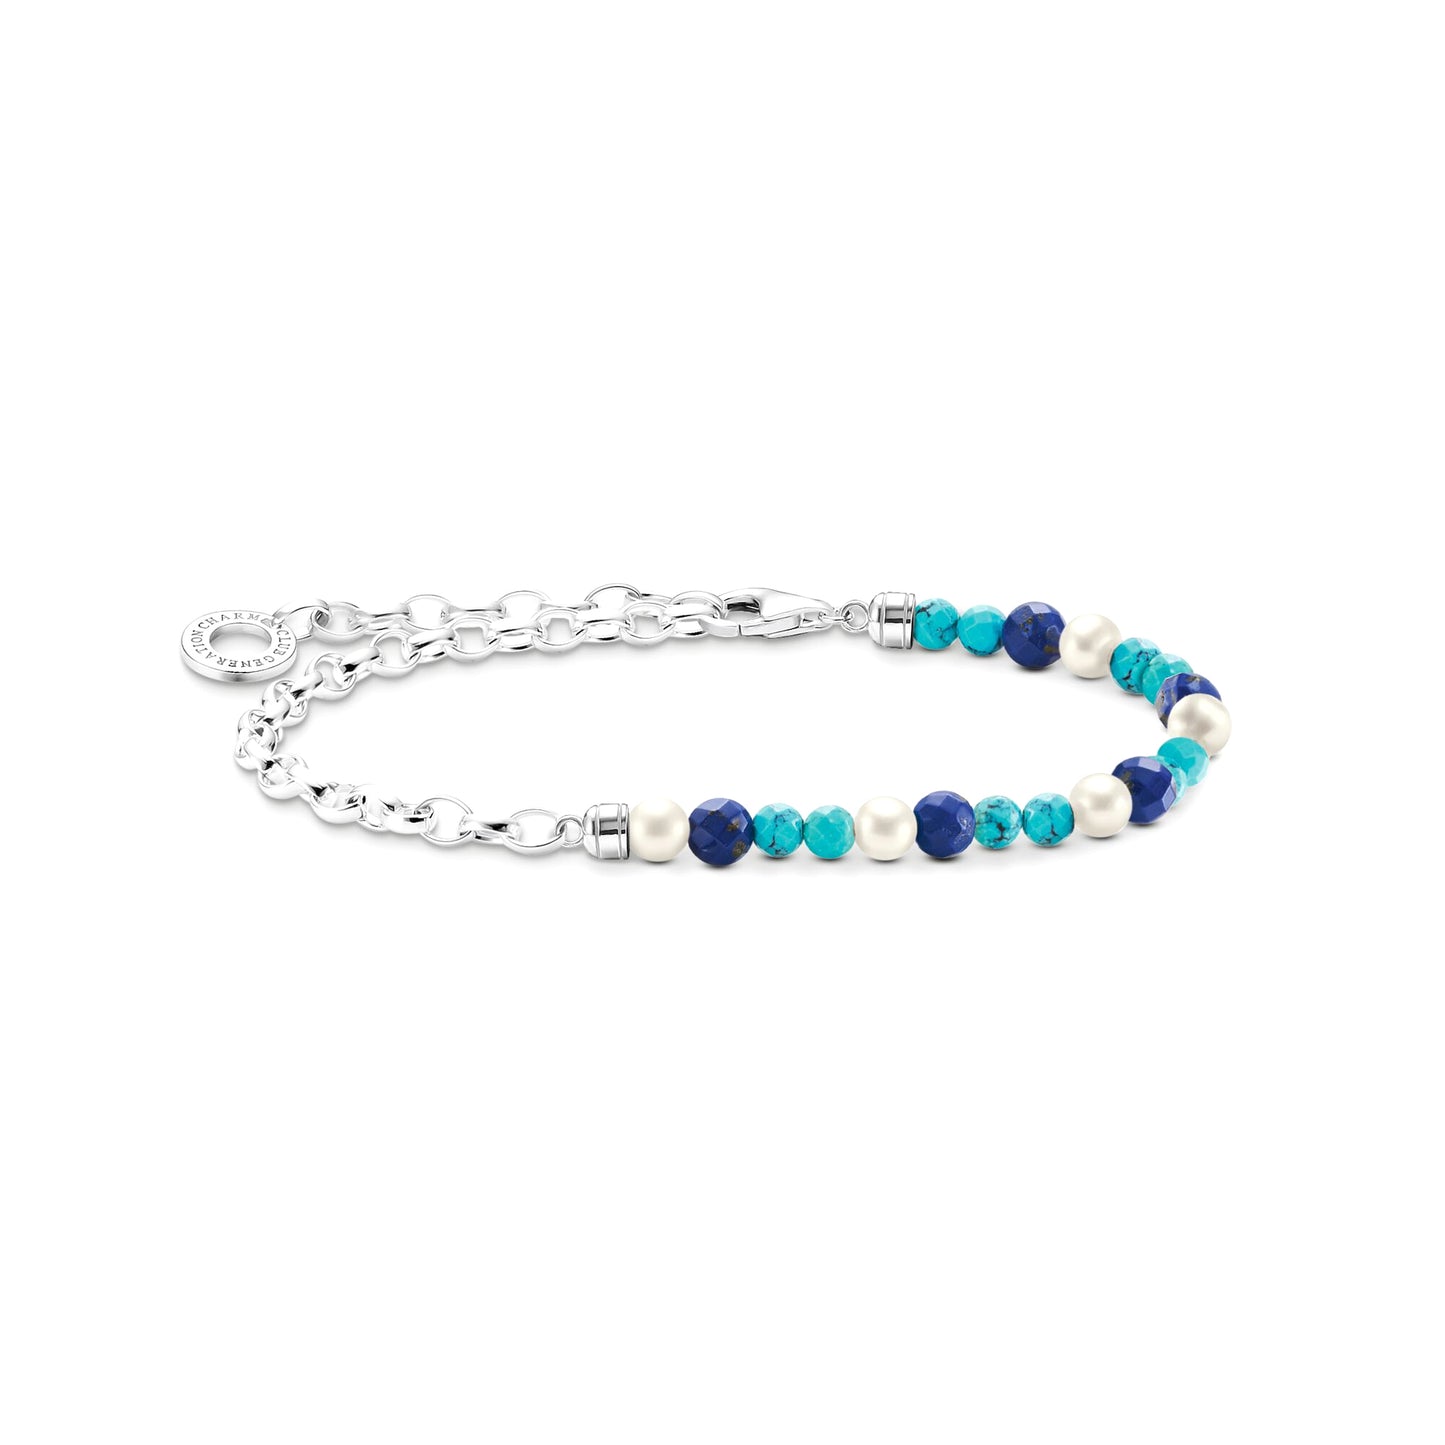 THOMAS SABO - Charm-Armband mit blauen Beads, weißen Perlen und Kettengliedern Silber